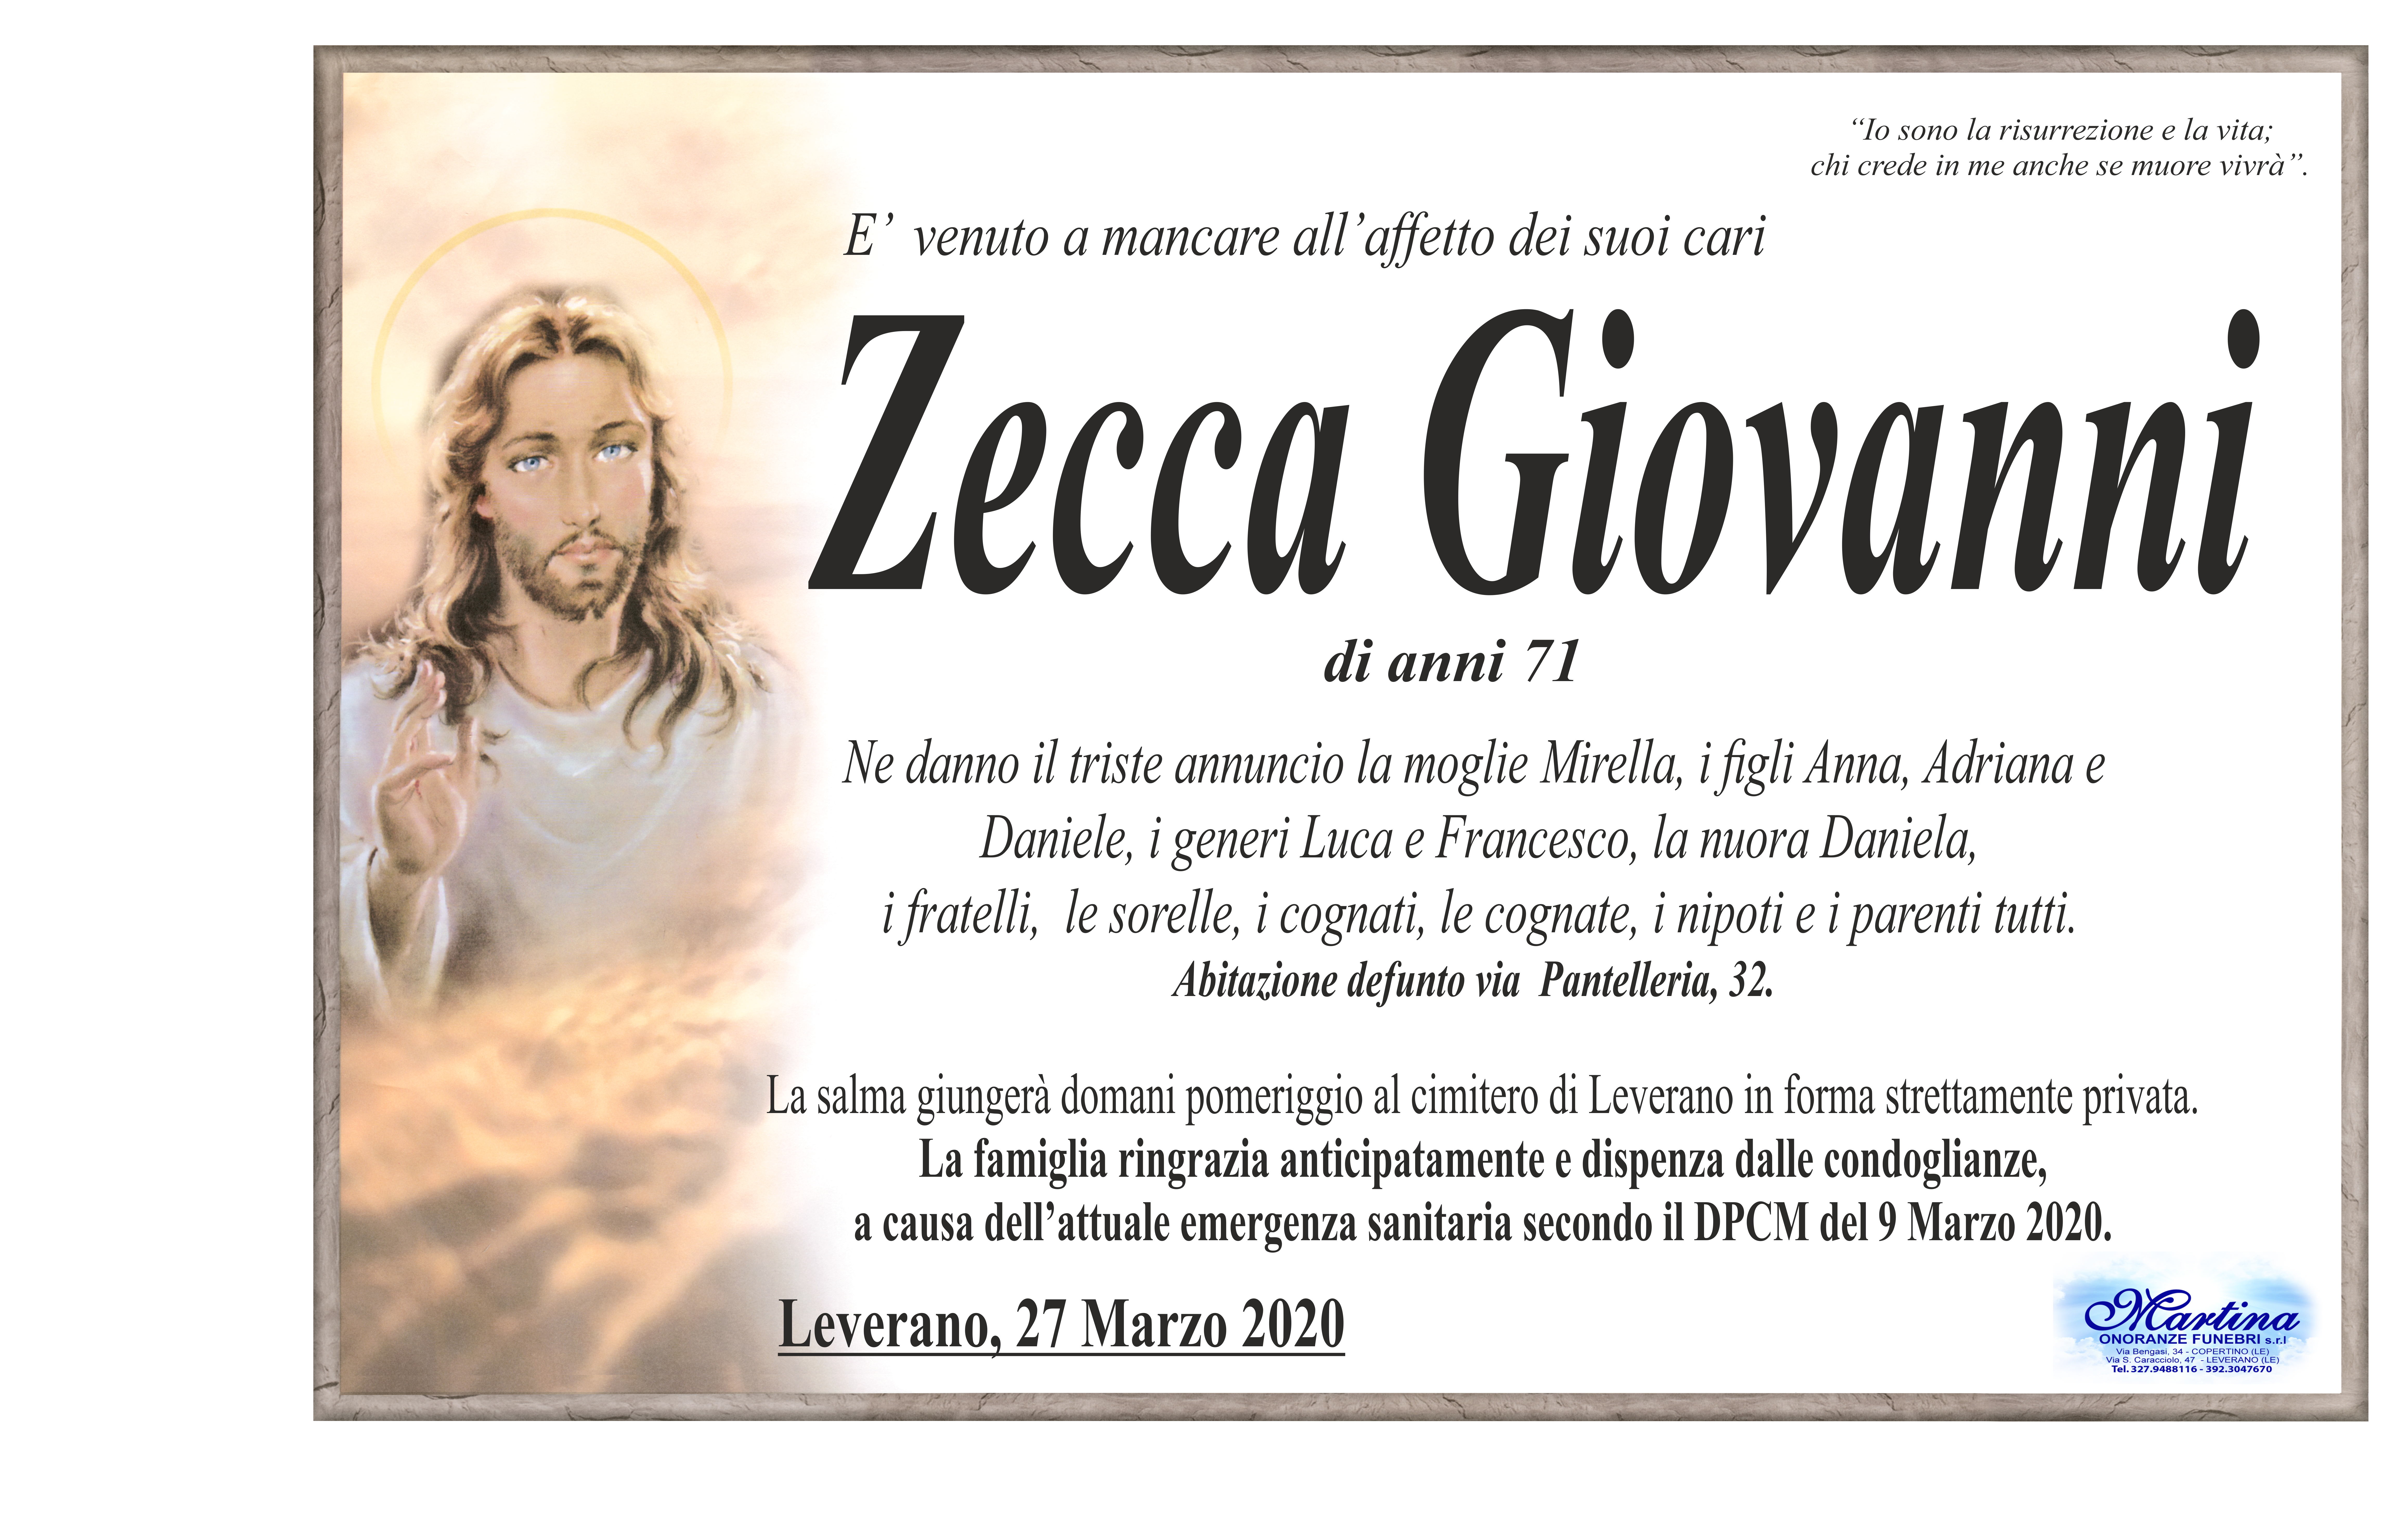 Giovanni Zecca